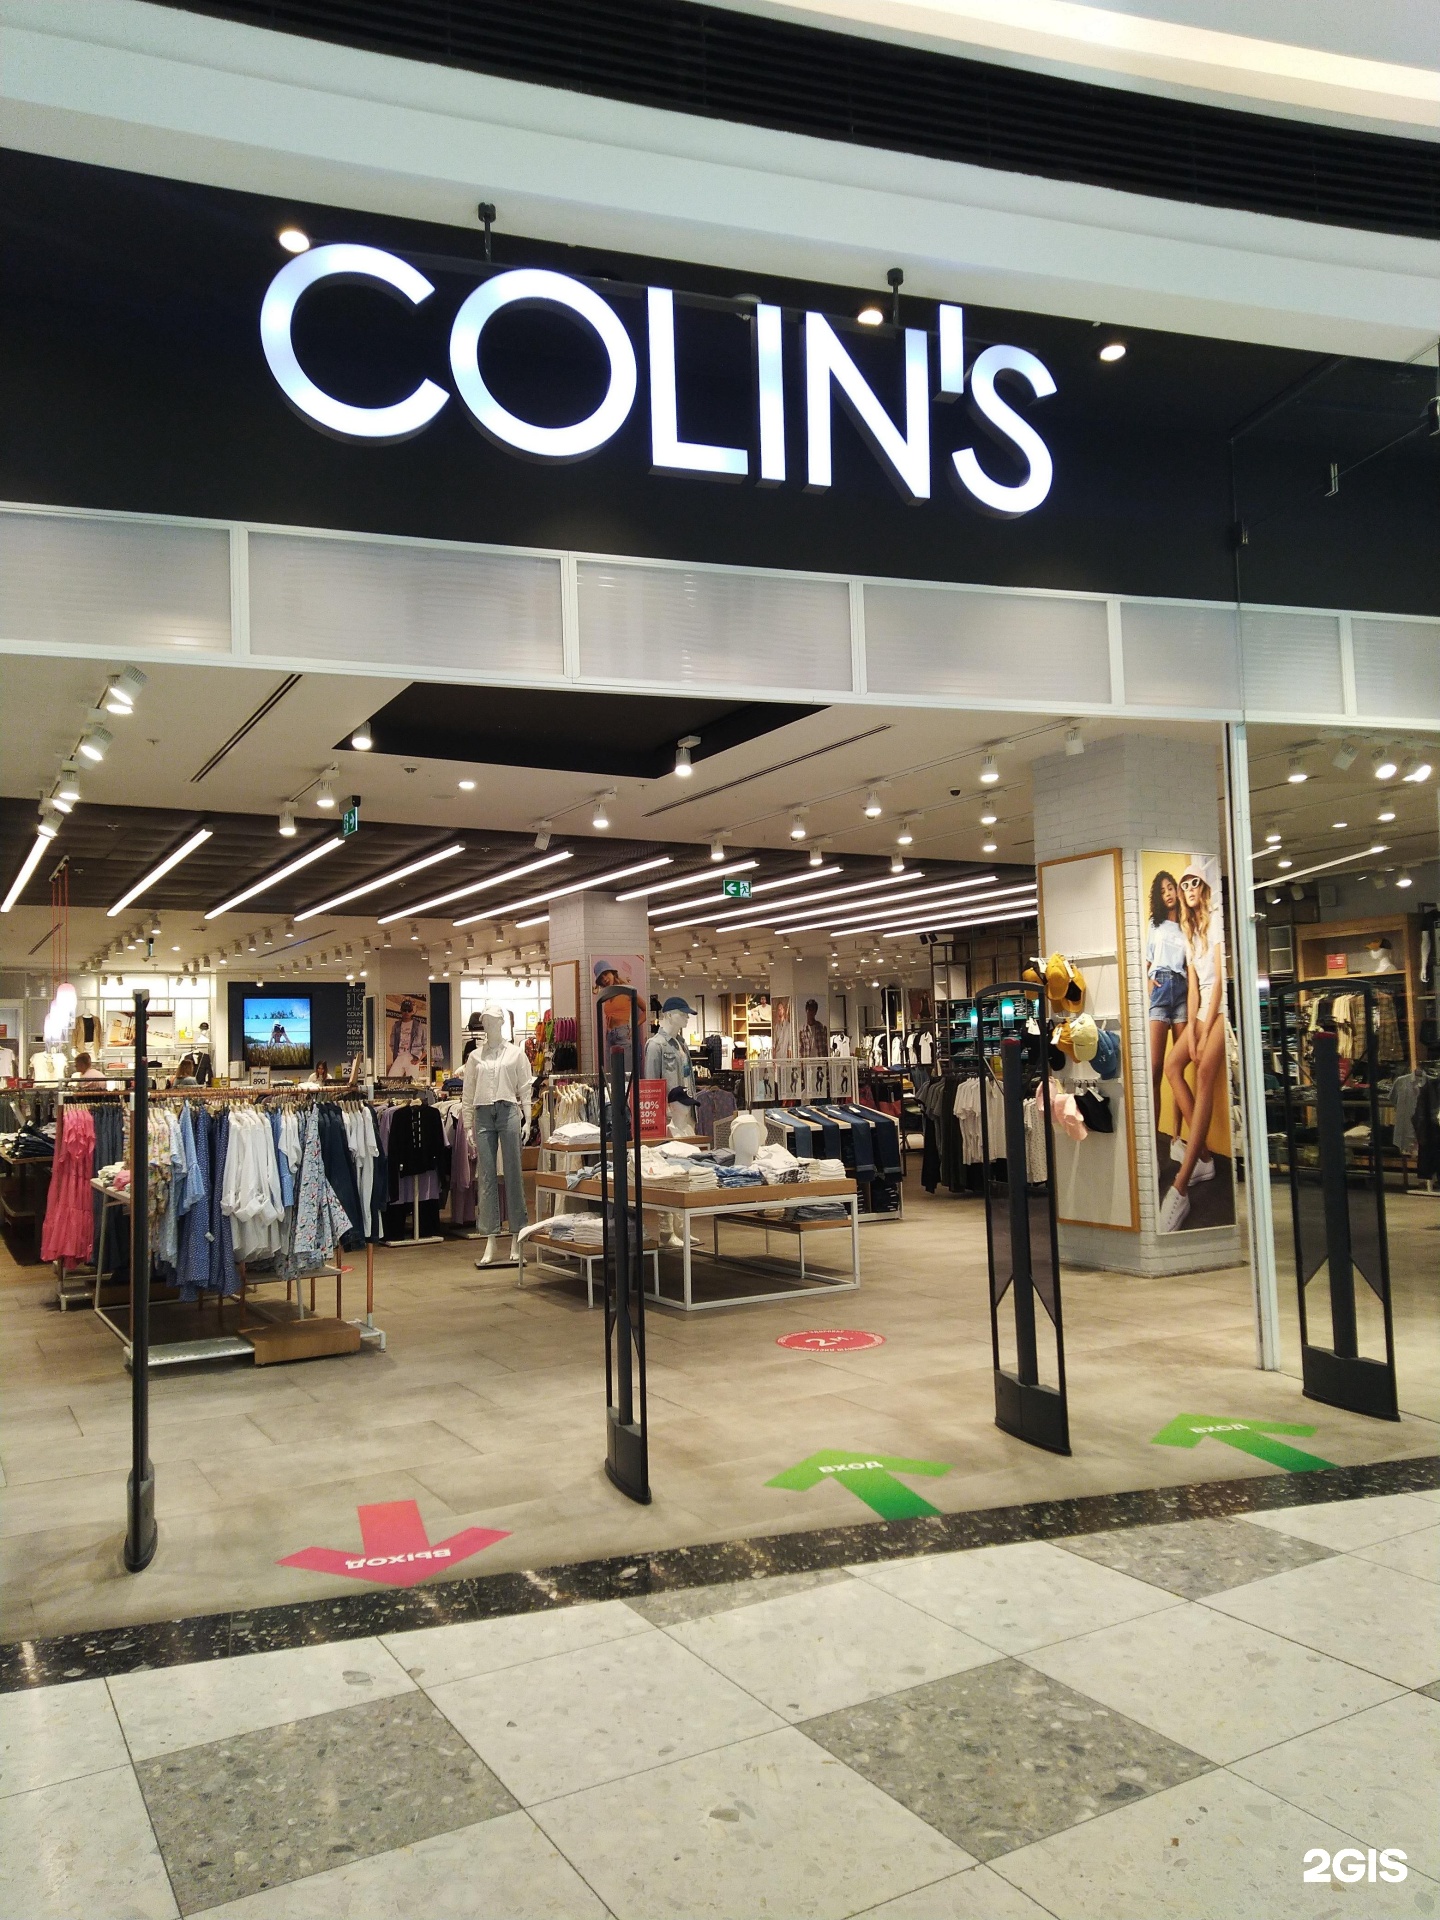 Colin`s Электросталь. Colin's самый большой магазин. Старые Colin's. Colin's духи. Colin's москва